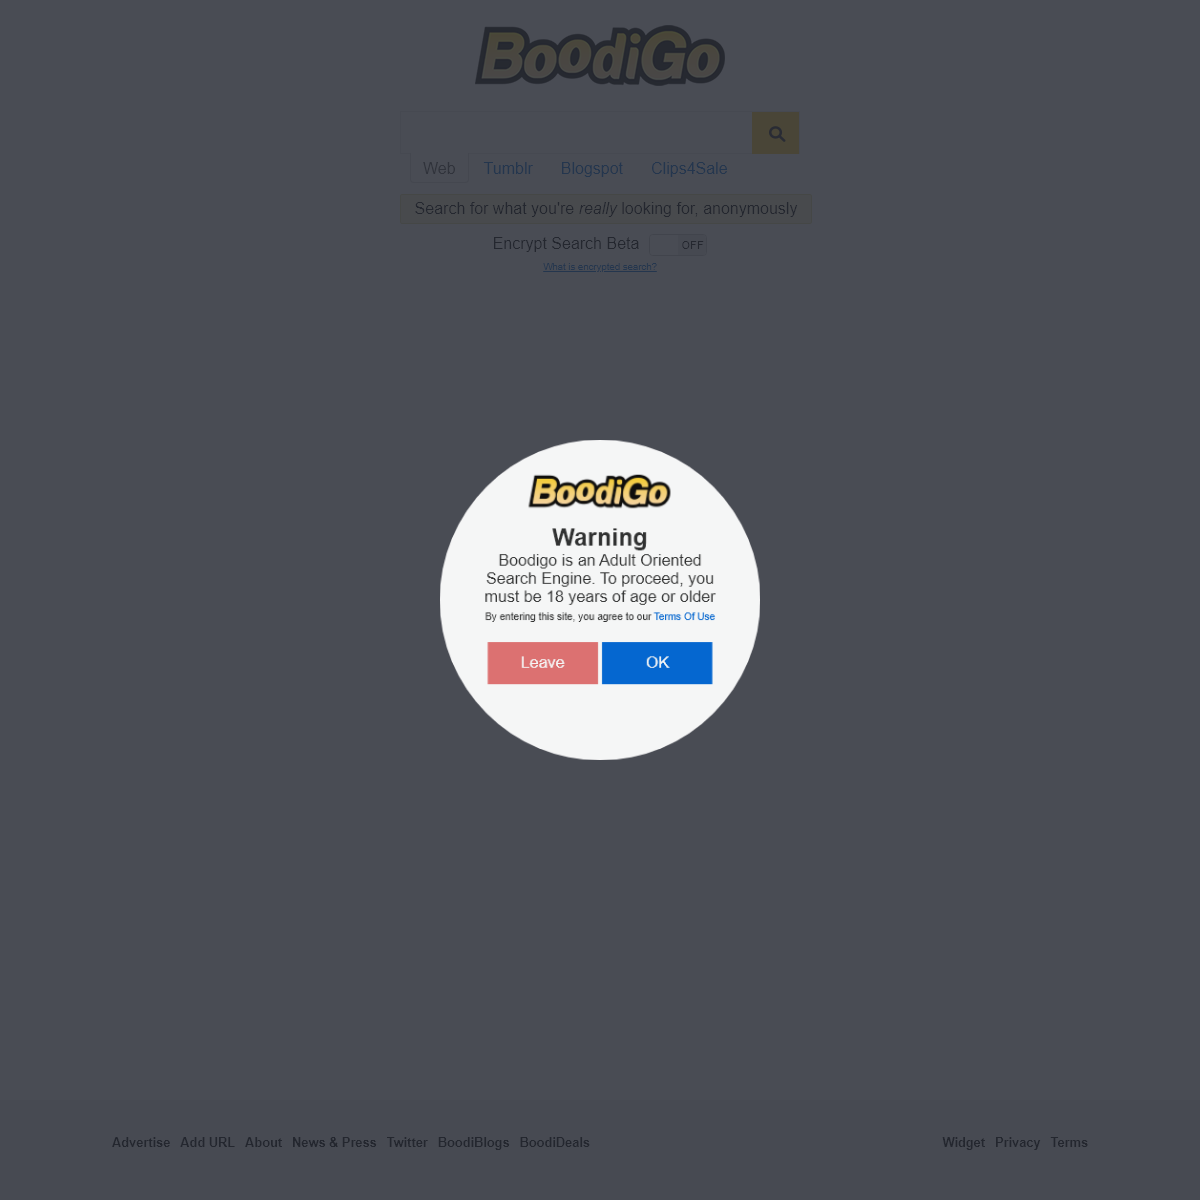 A complete backup of boodigo.com